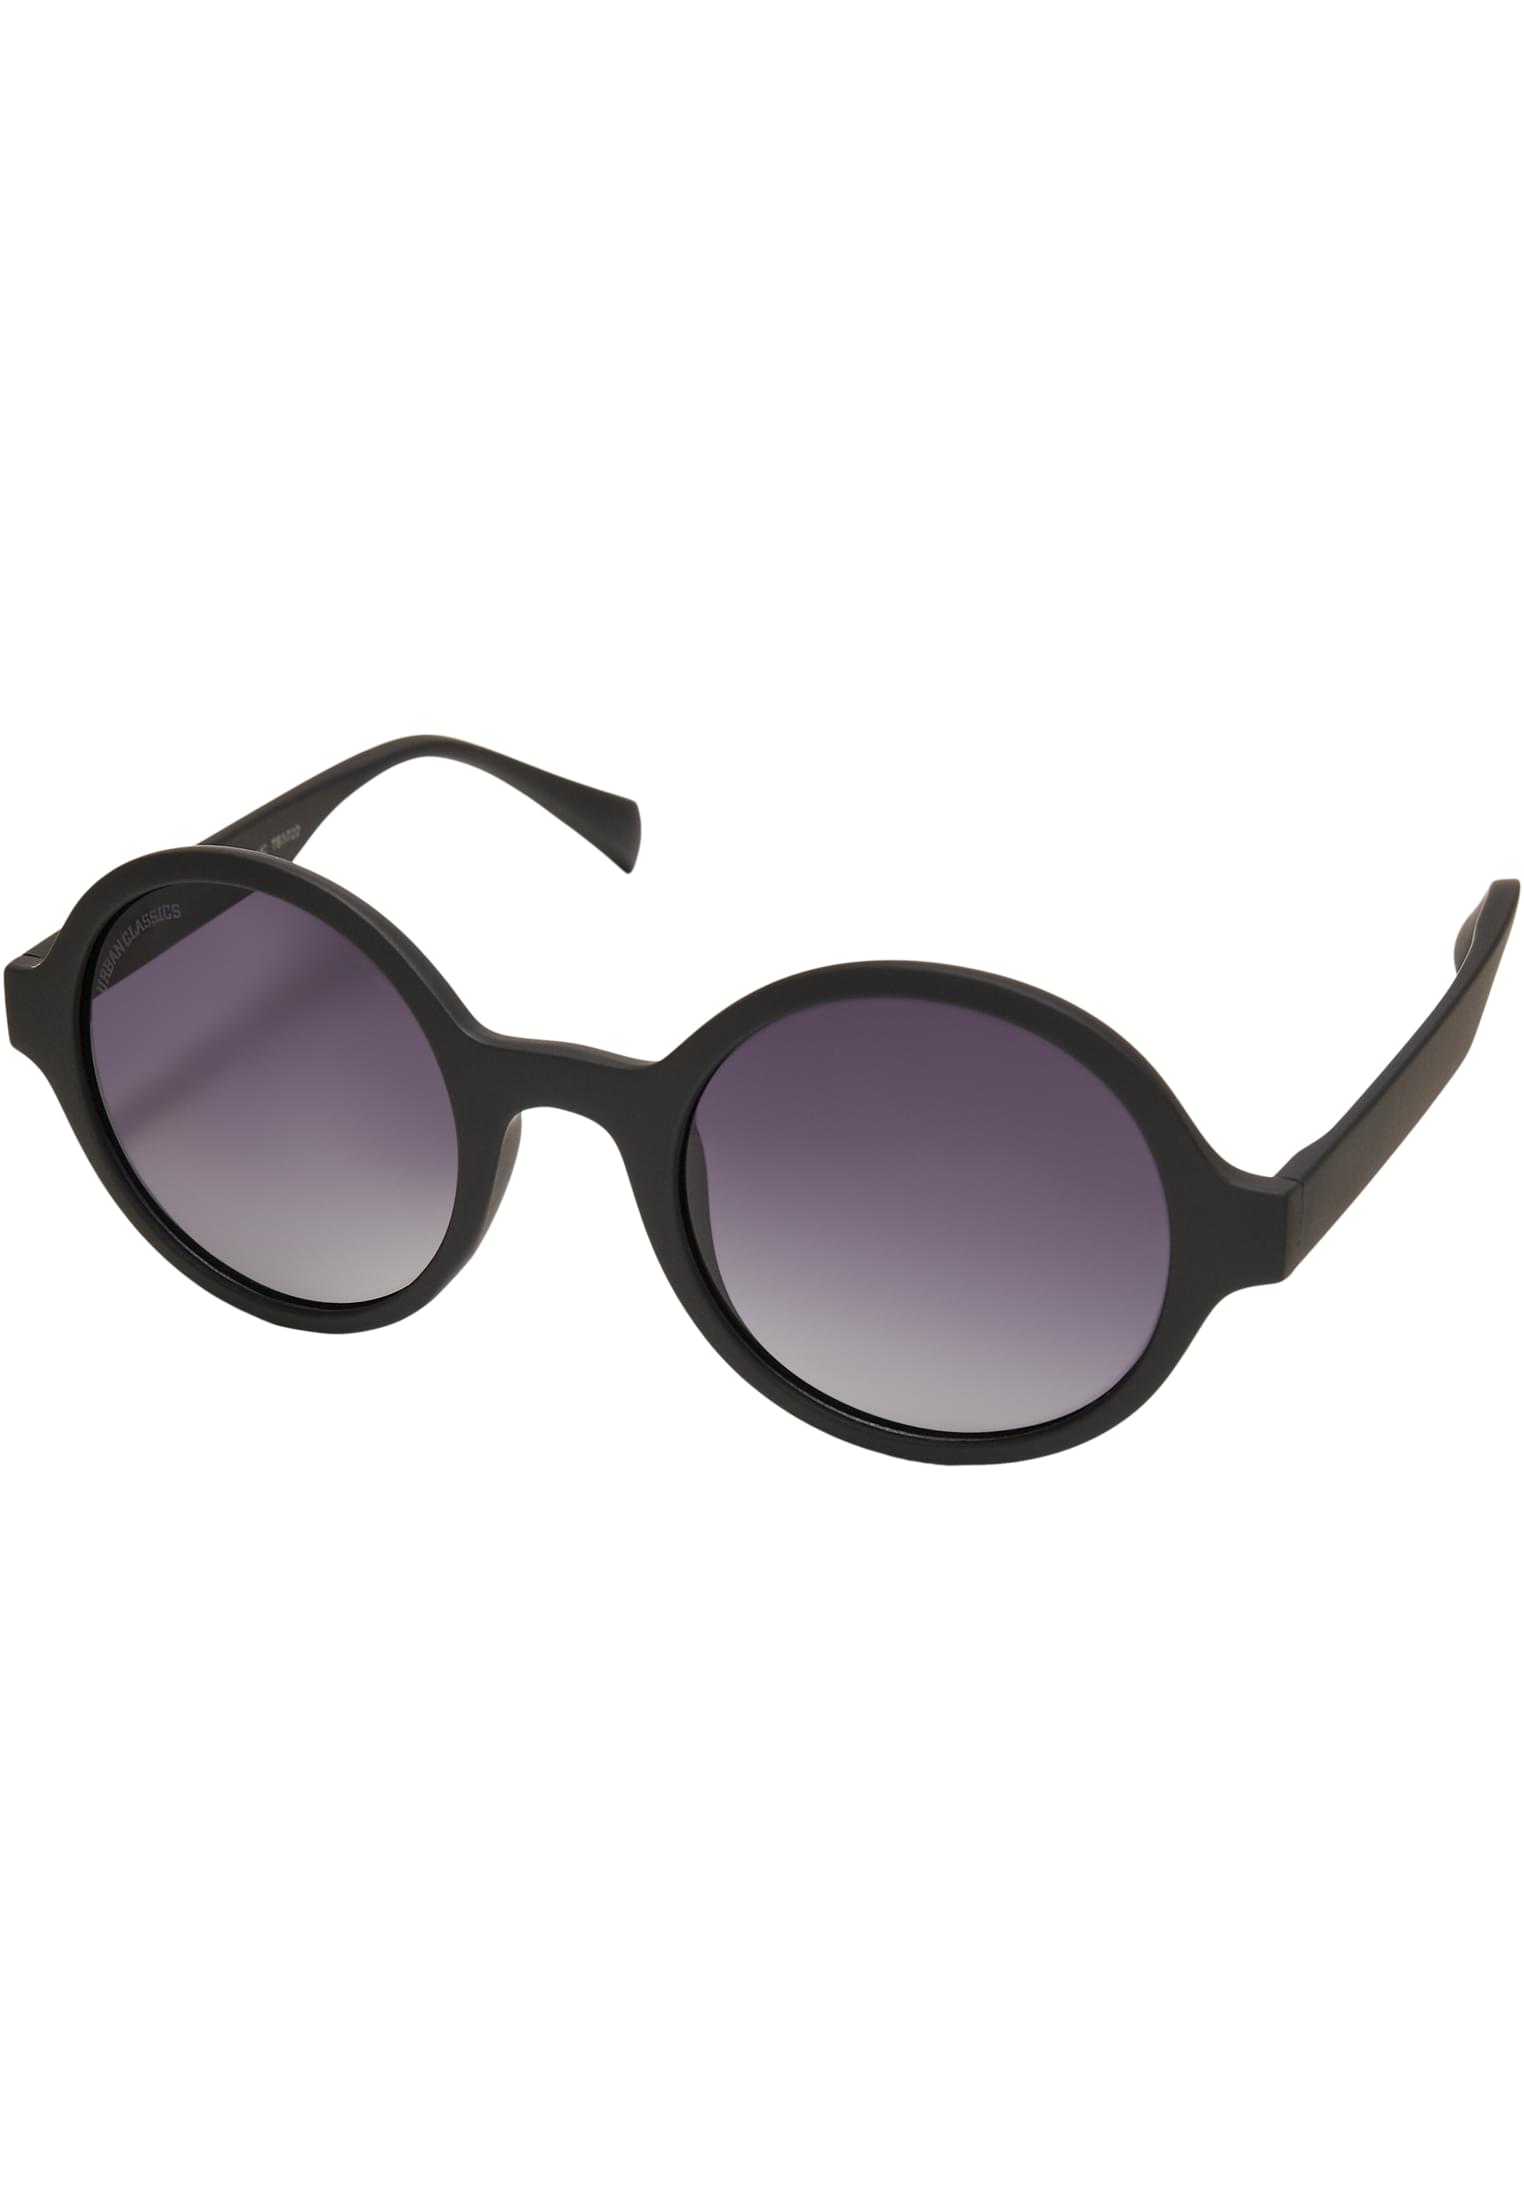 Accessoires Sunglasses Retro Funk UC in Farbe black/grey